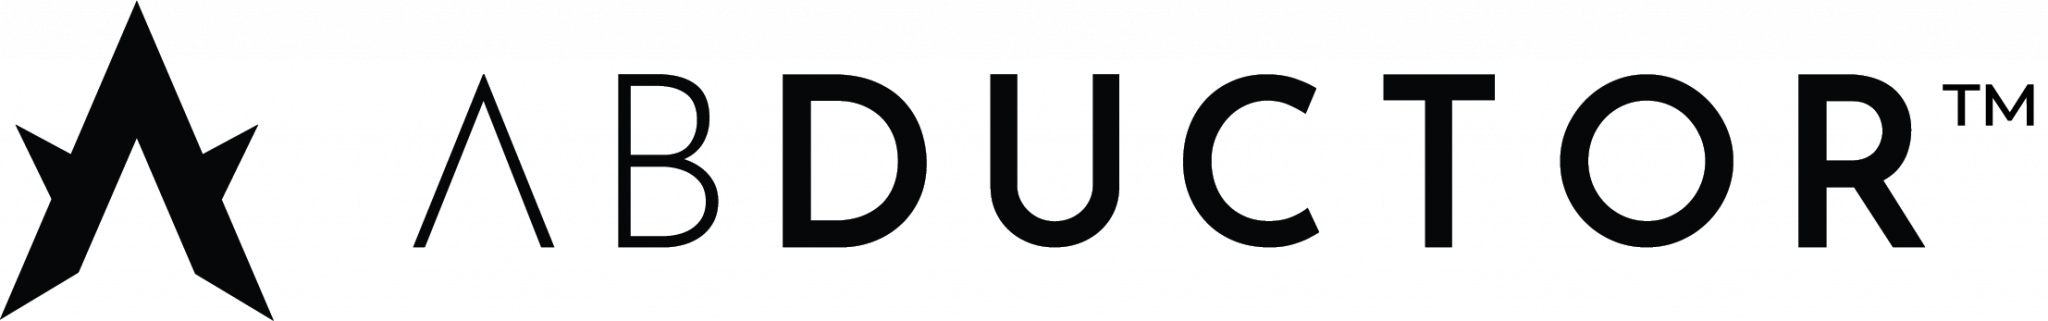 Abductor-Logo-black-TM-2048x321-1